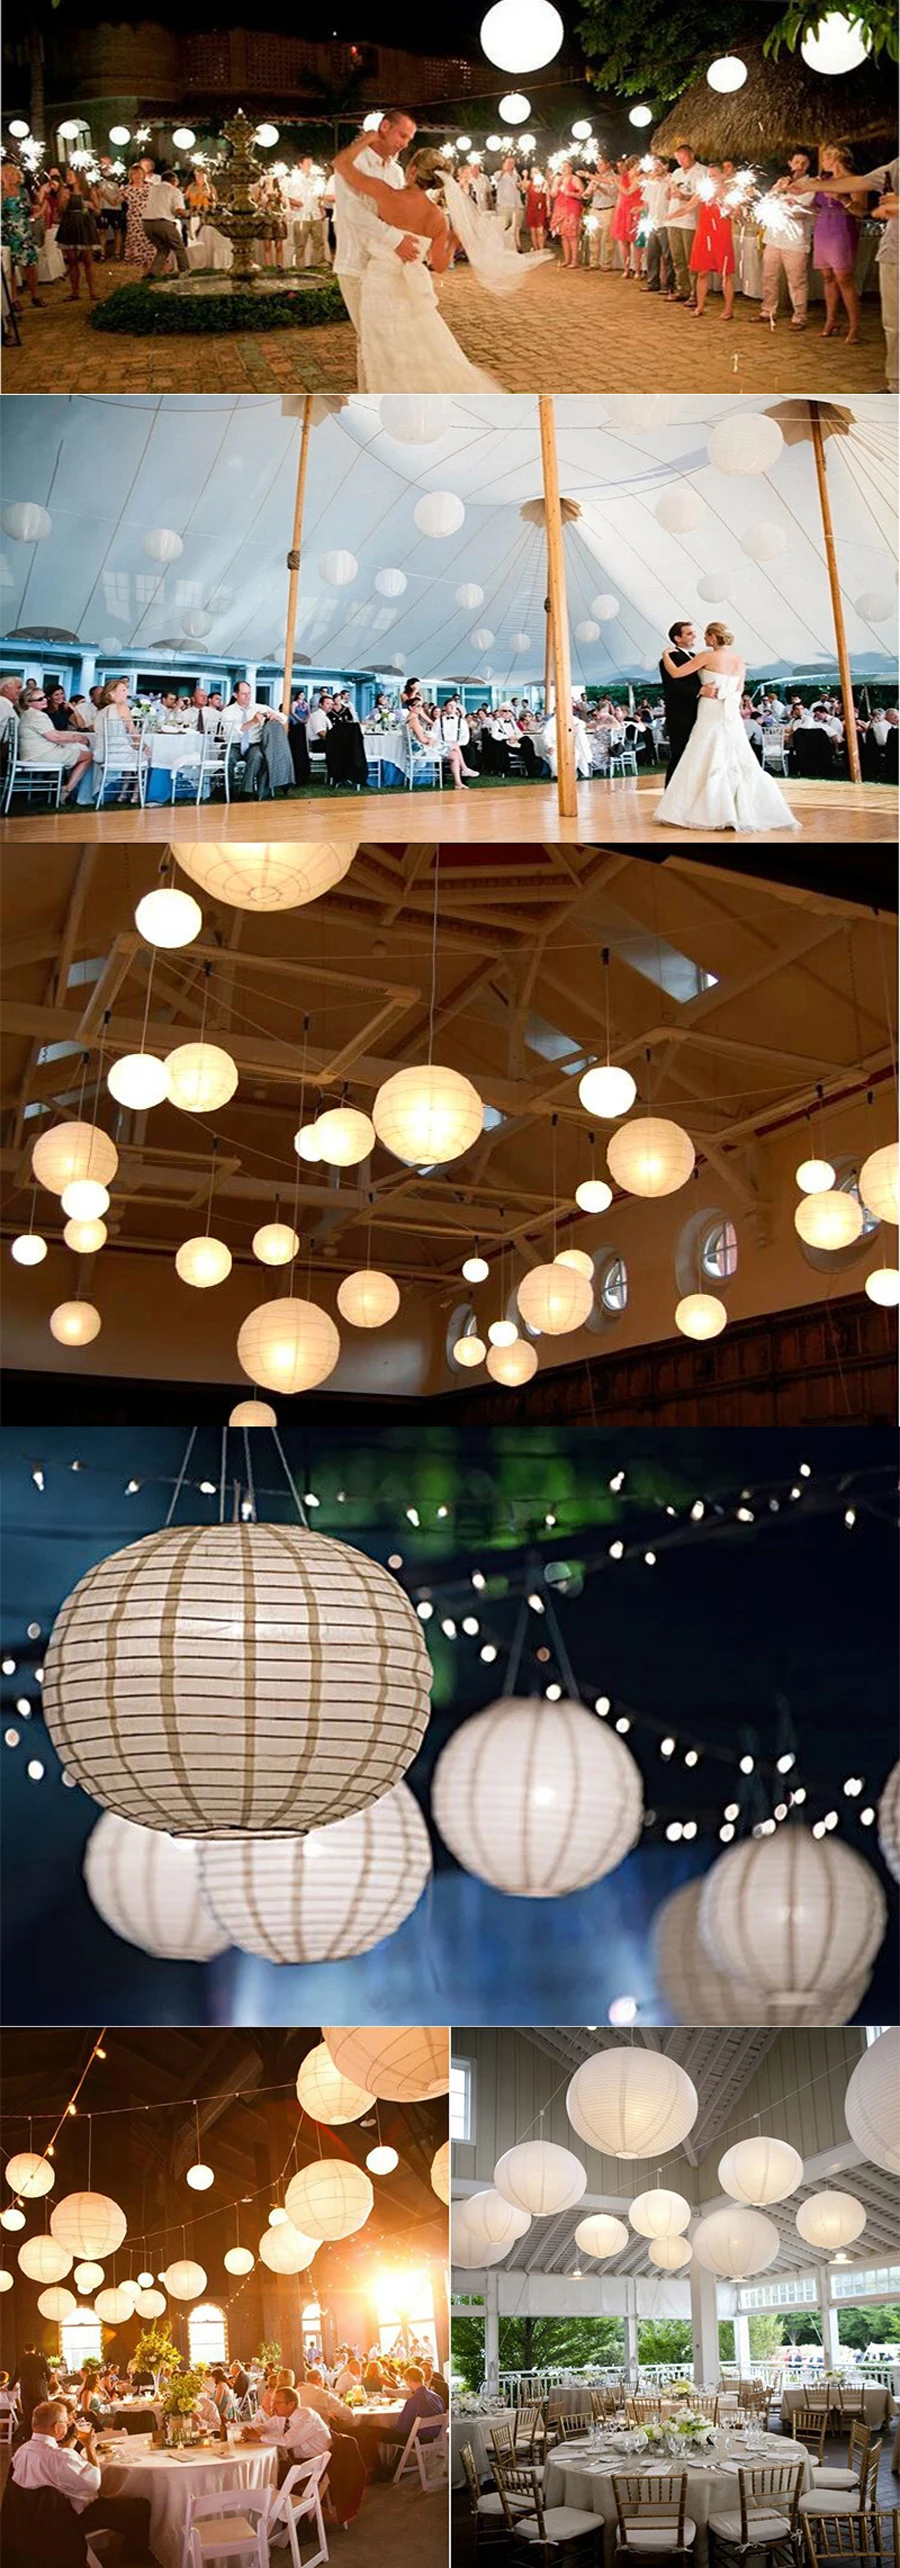 20 шт./лот " 8" 1" 12 дюймов белый китайский бумажный мяч лампион Свадебные украшения бумага для фонарей абажур Обручение вечерние Декор